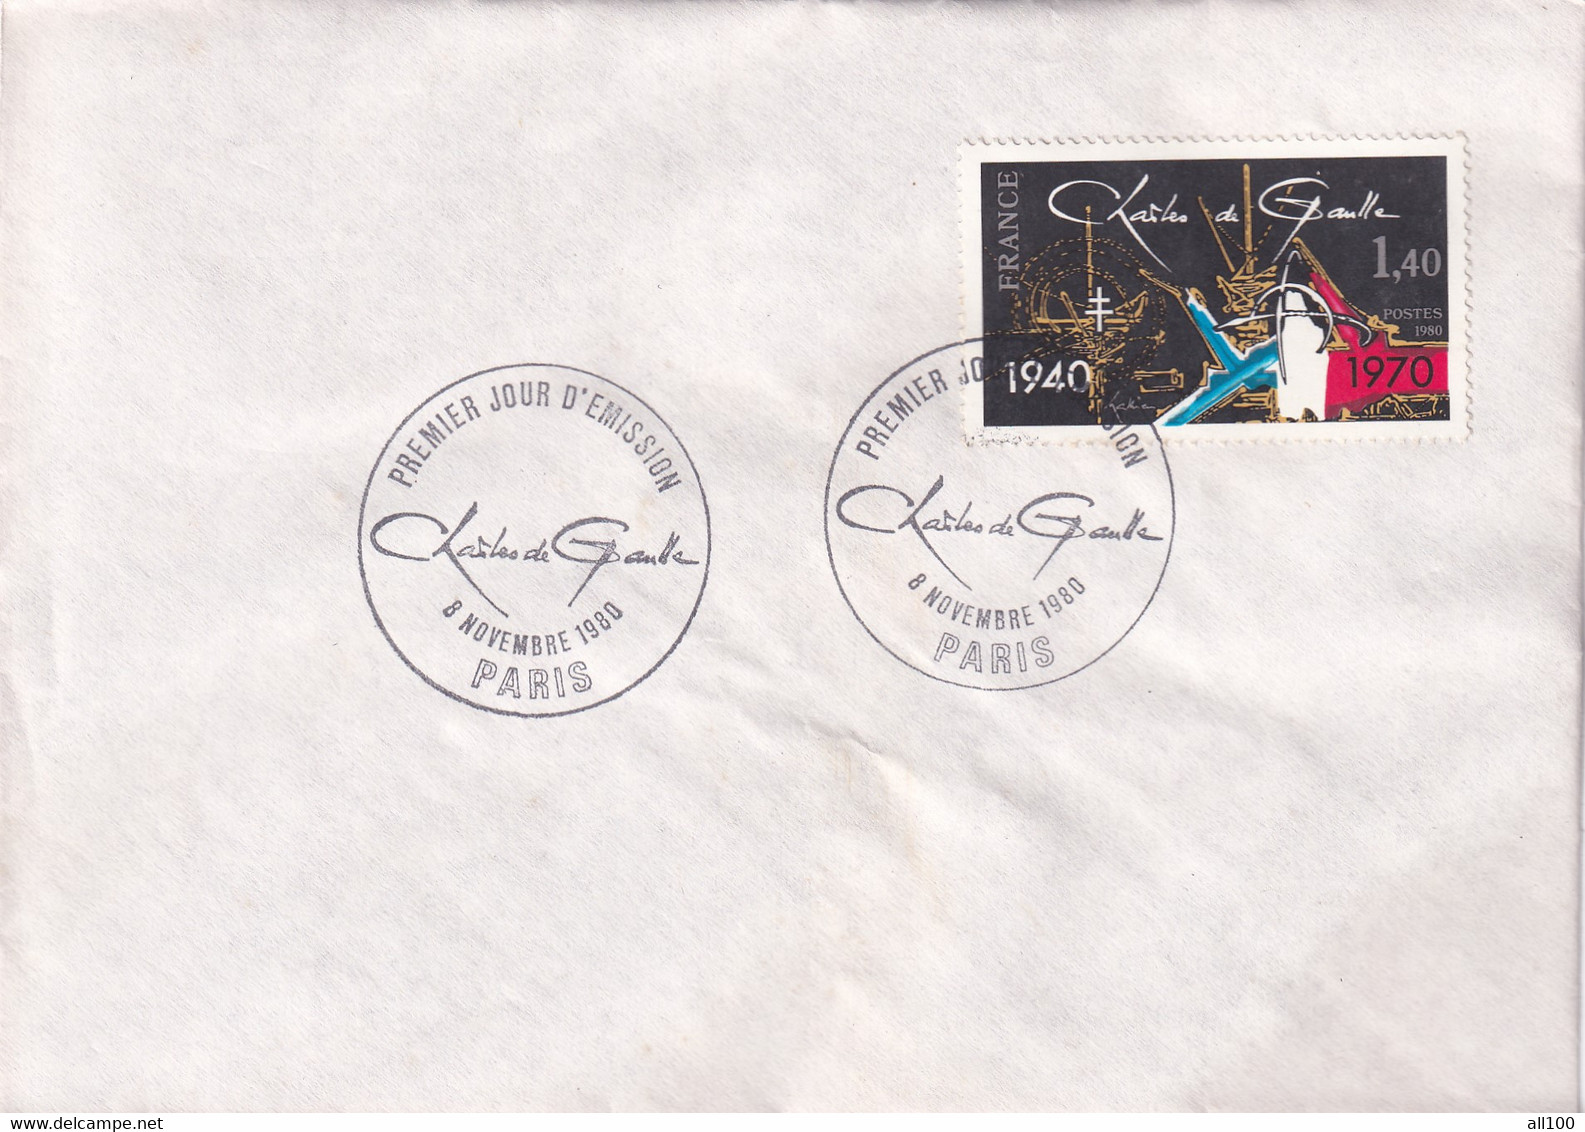 A21870 - Premier Jour D'Emission Charles De Gaulle Paris Cover Envelope Unused 1980 Stamp France - Covers & Documents